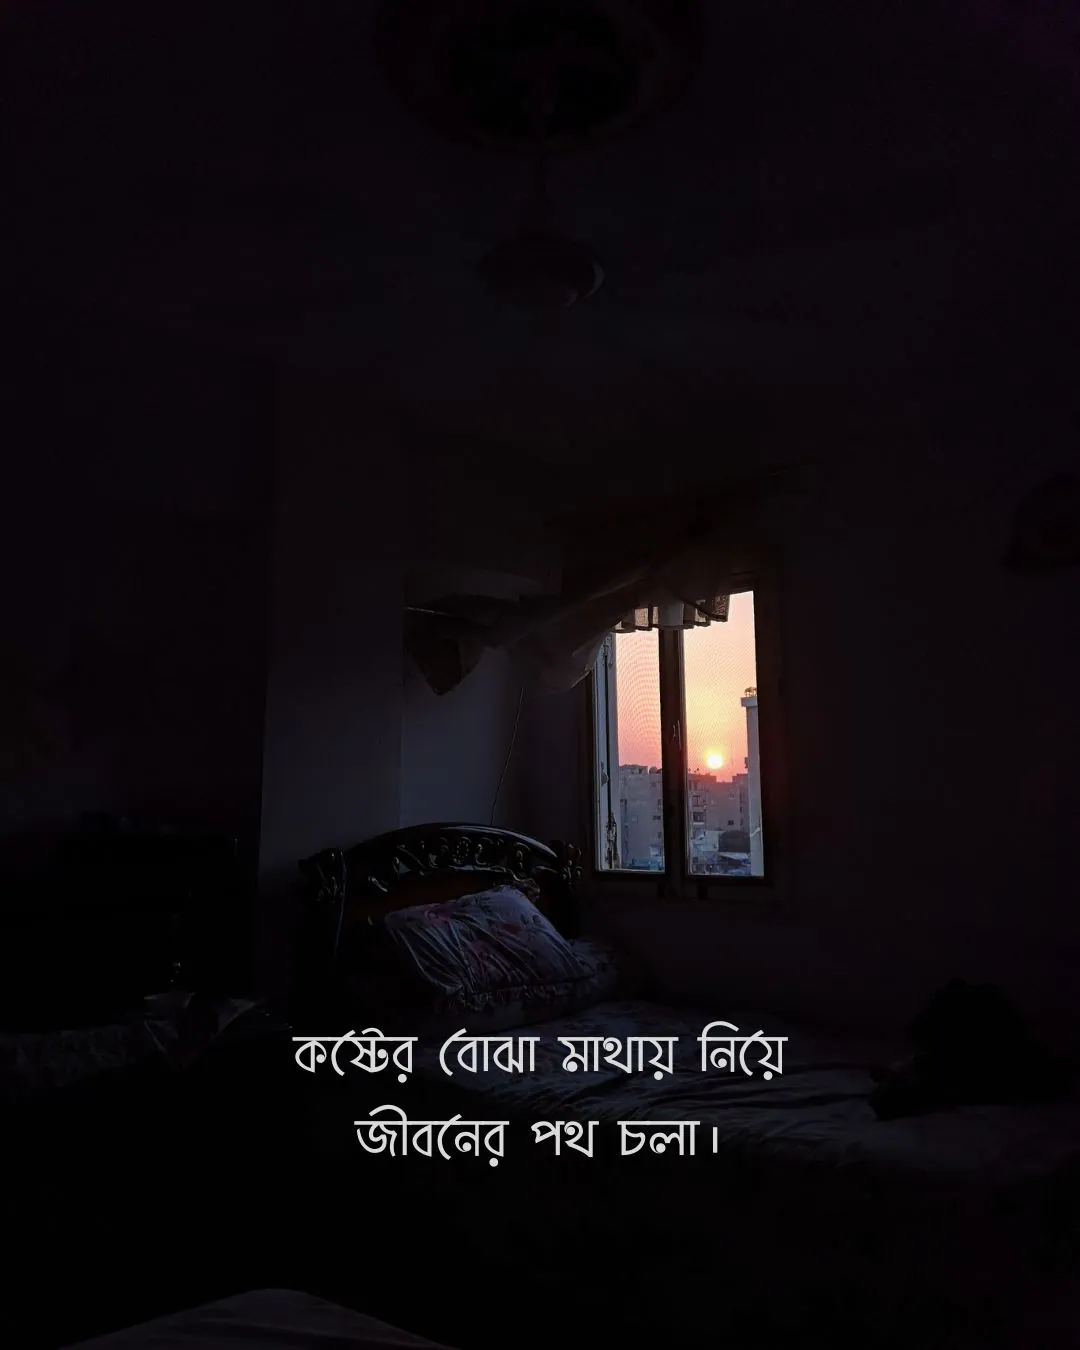 কষ্টের বোঝা মাথায় নিয়ে, জীবনের পথ চলা - dark room sadness bangla